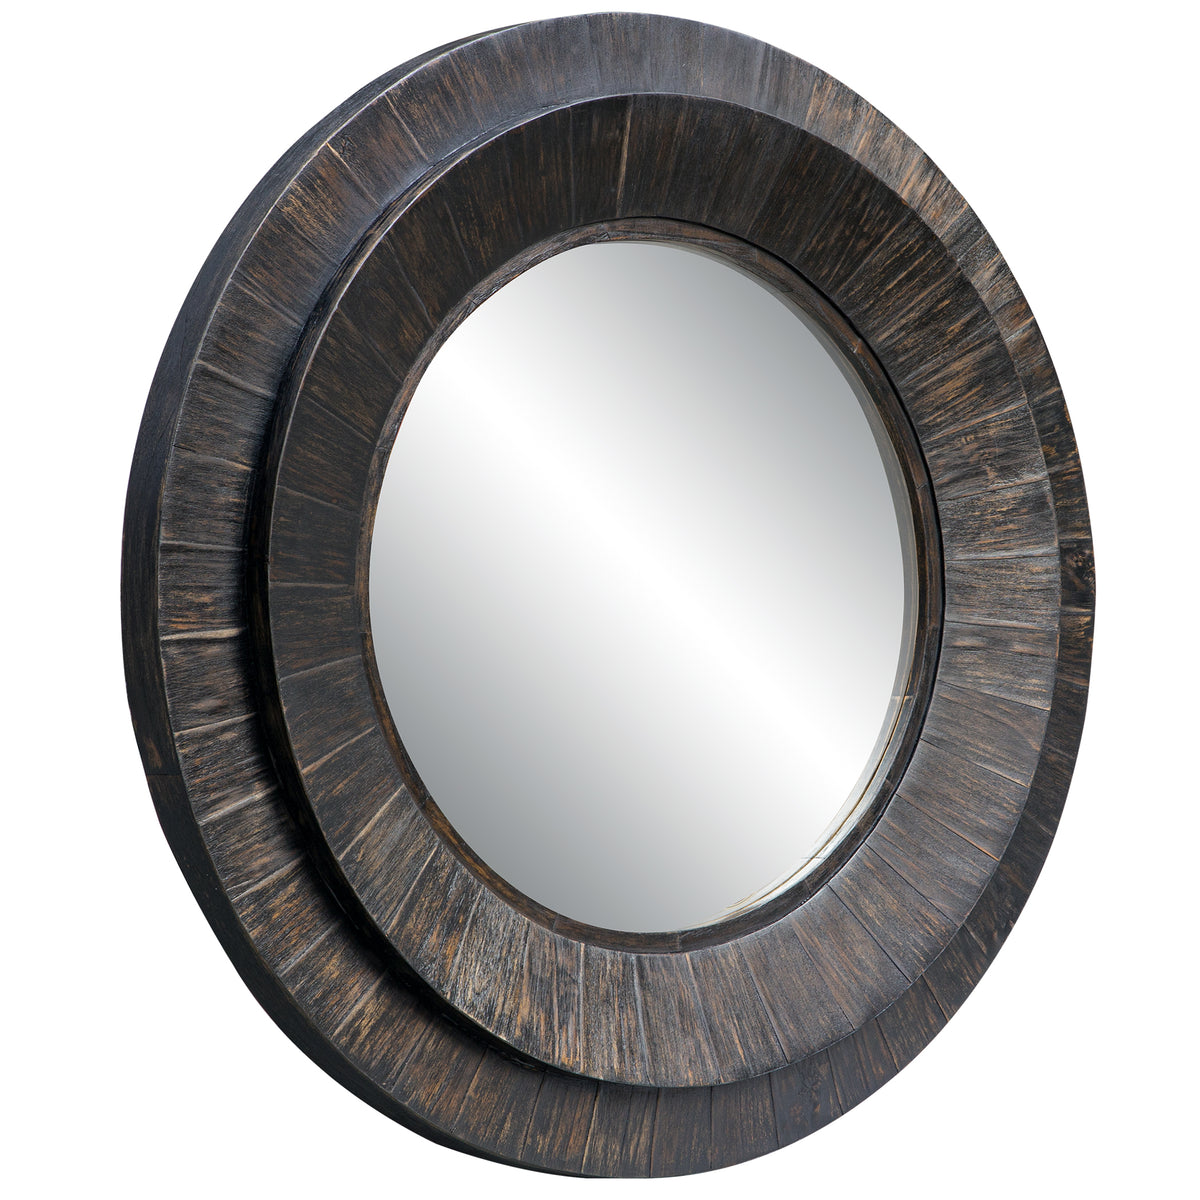 Uttermost Corral Round Wood Mirror